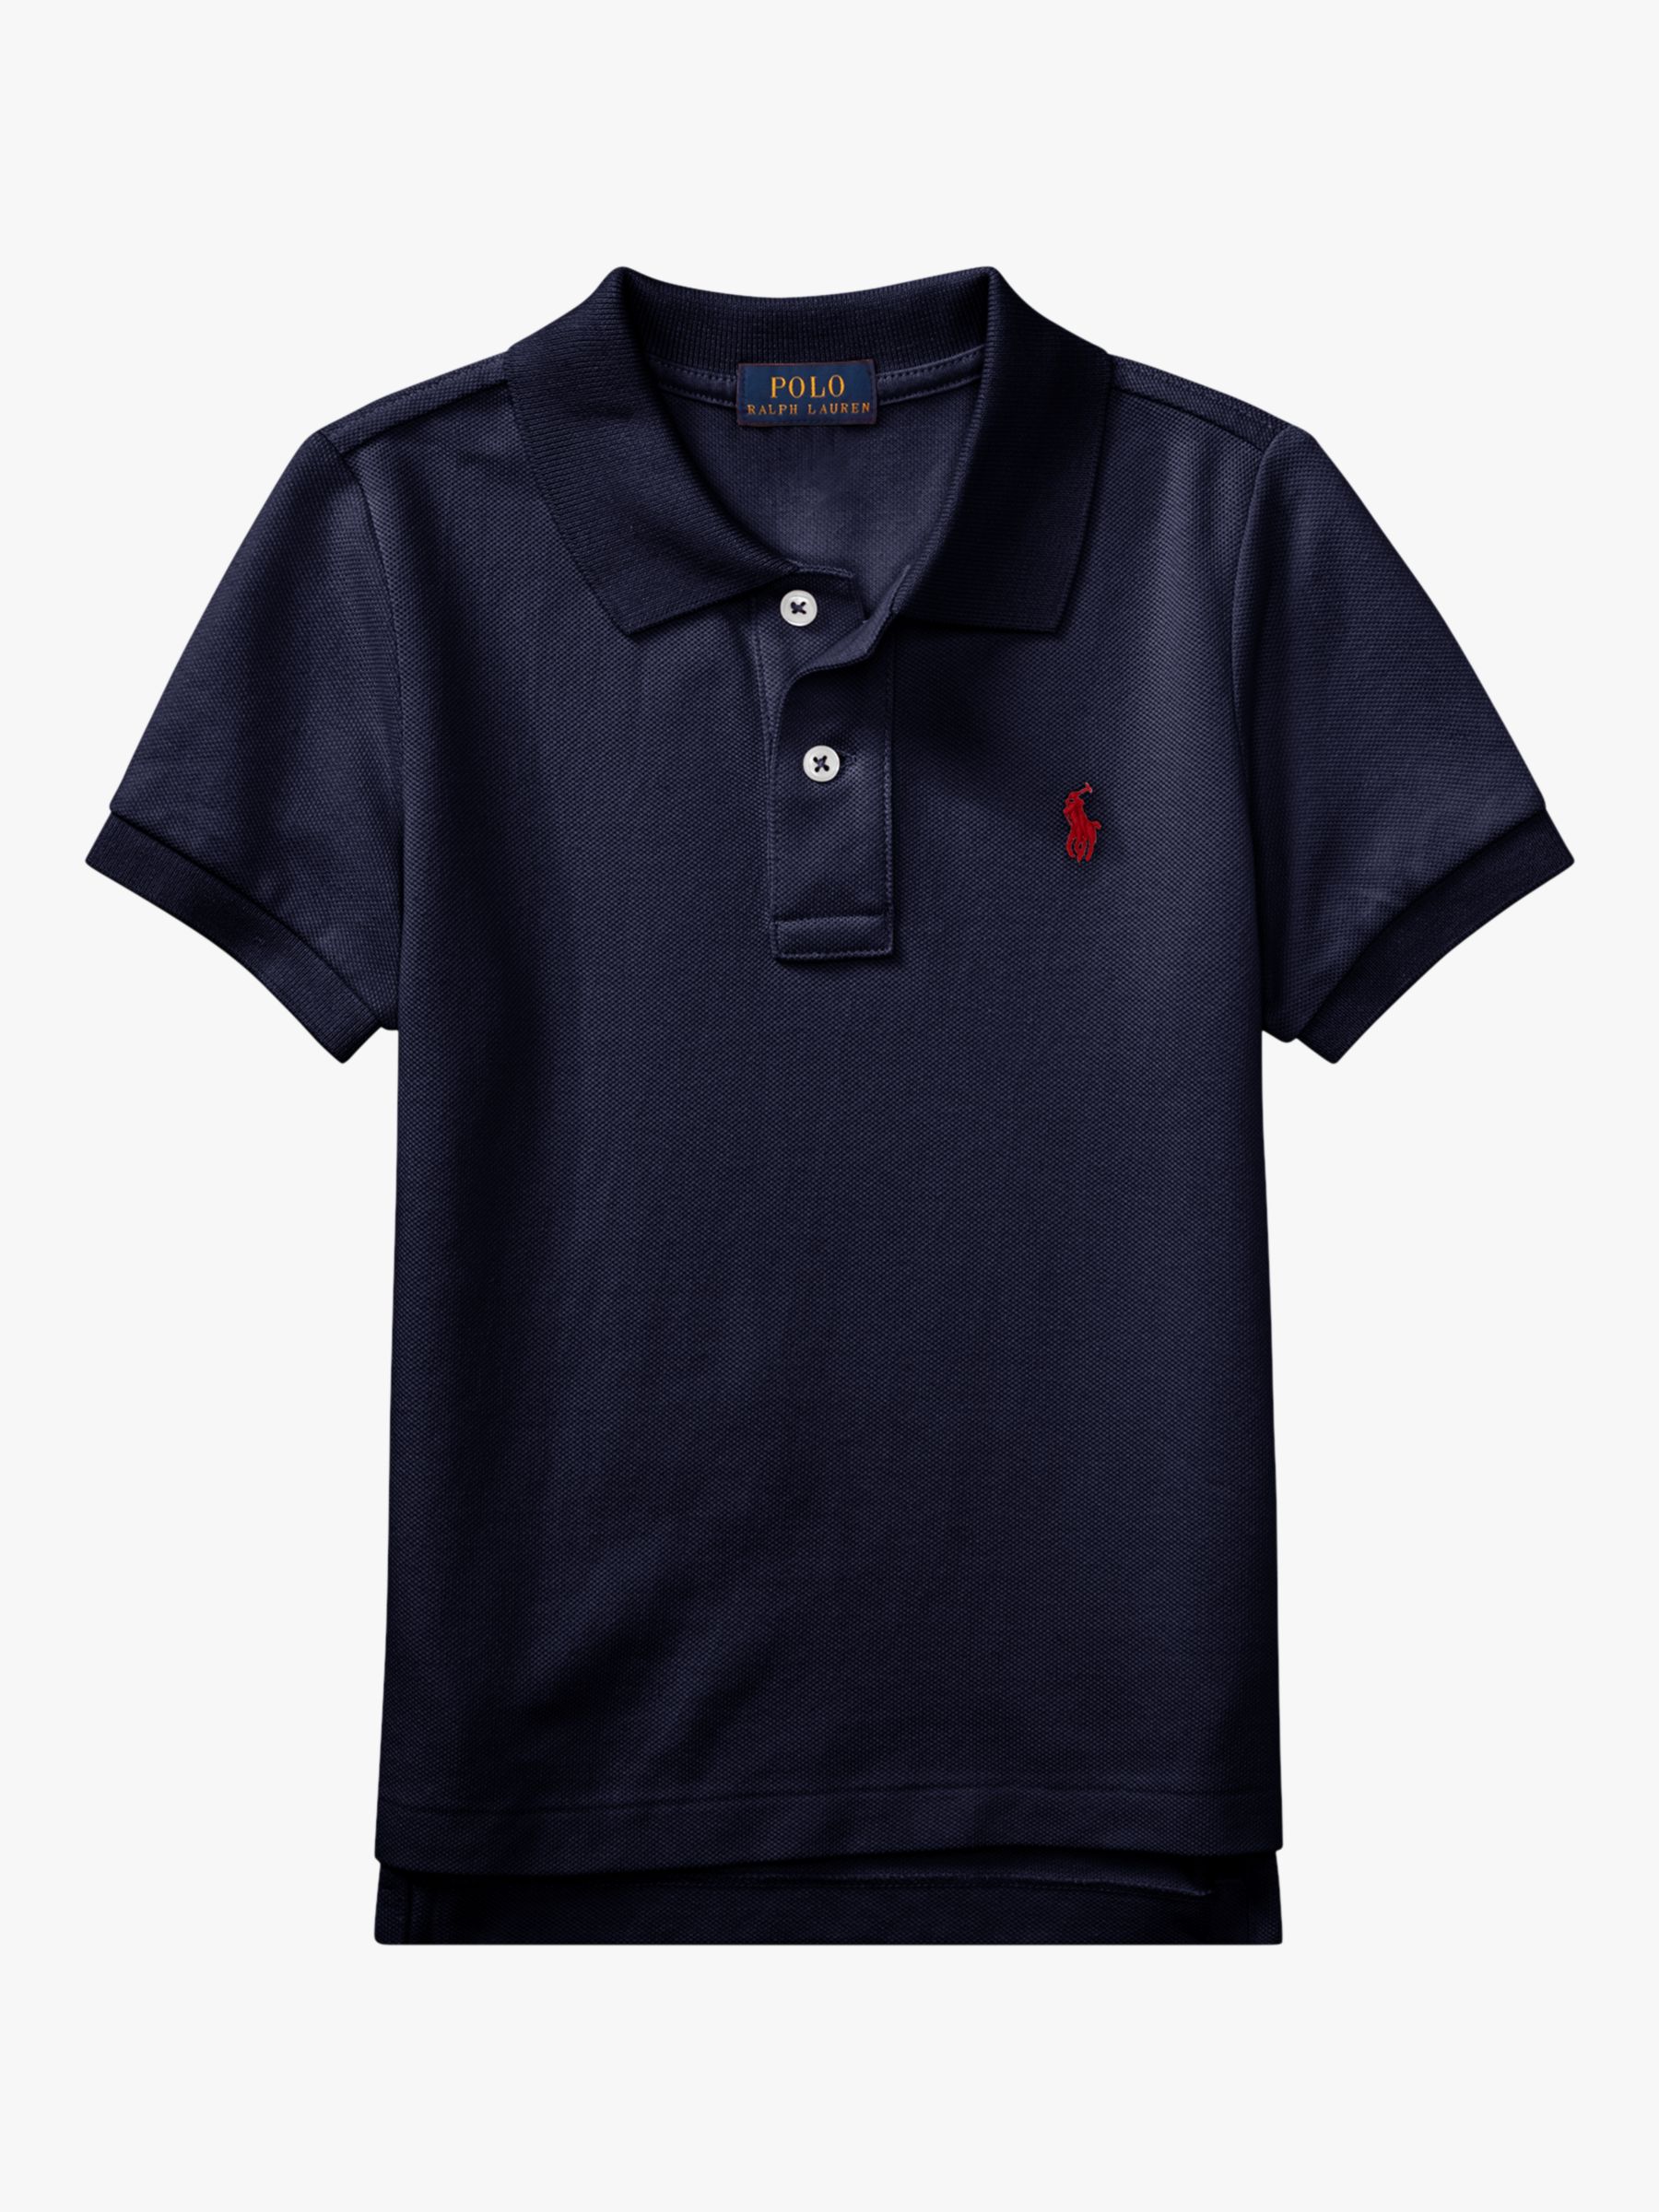 Polo Ralph Lauren Boys' Polo Shirt at 